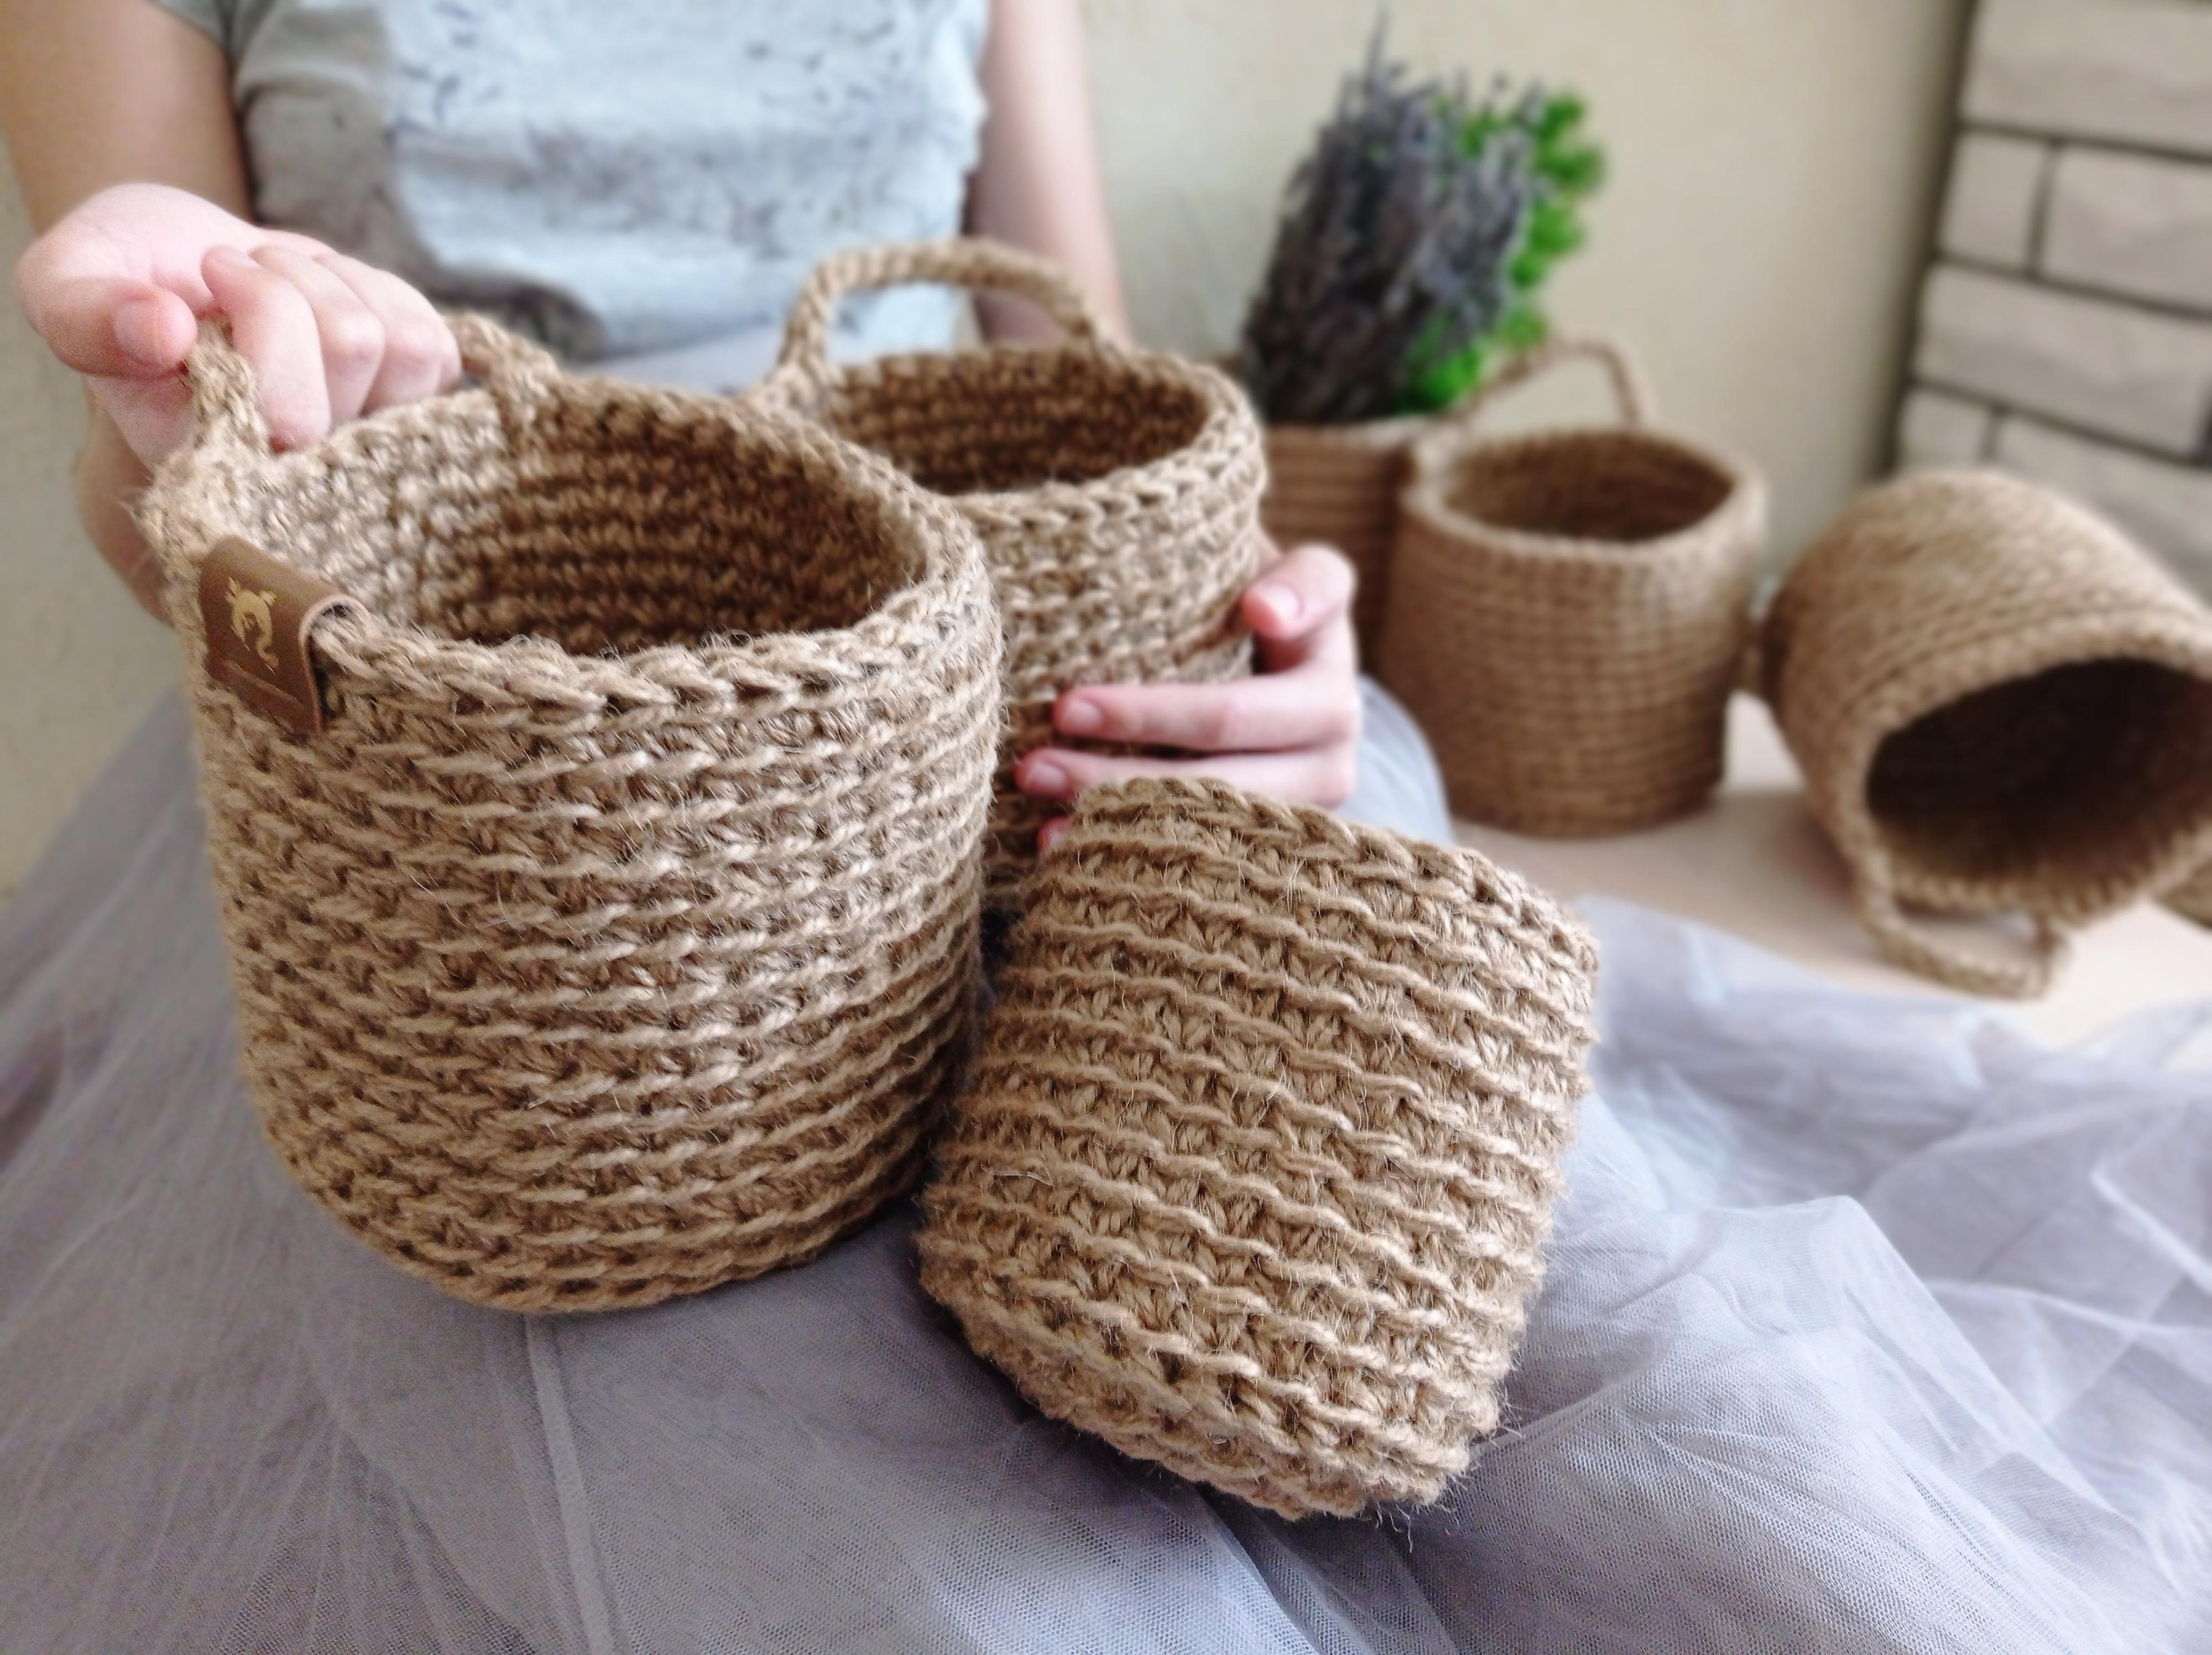 Как сделать корзины своими руками: пошаговое изготовление из джута, лозы, веревки, ротанга и бумаги